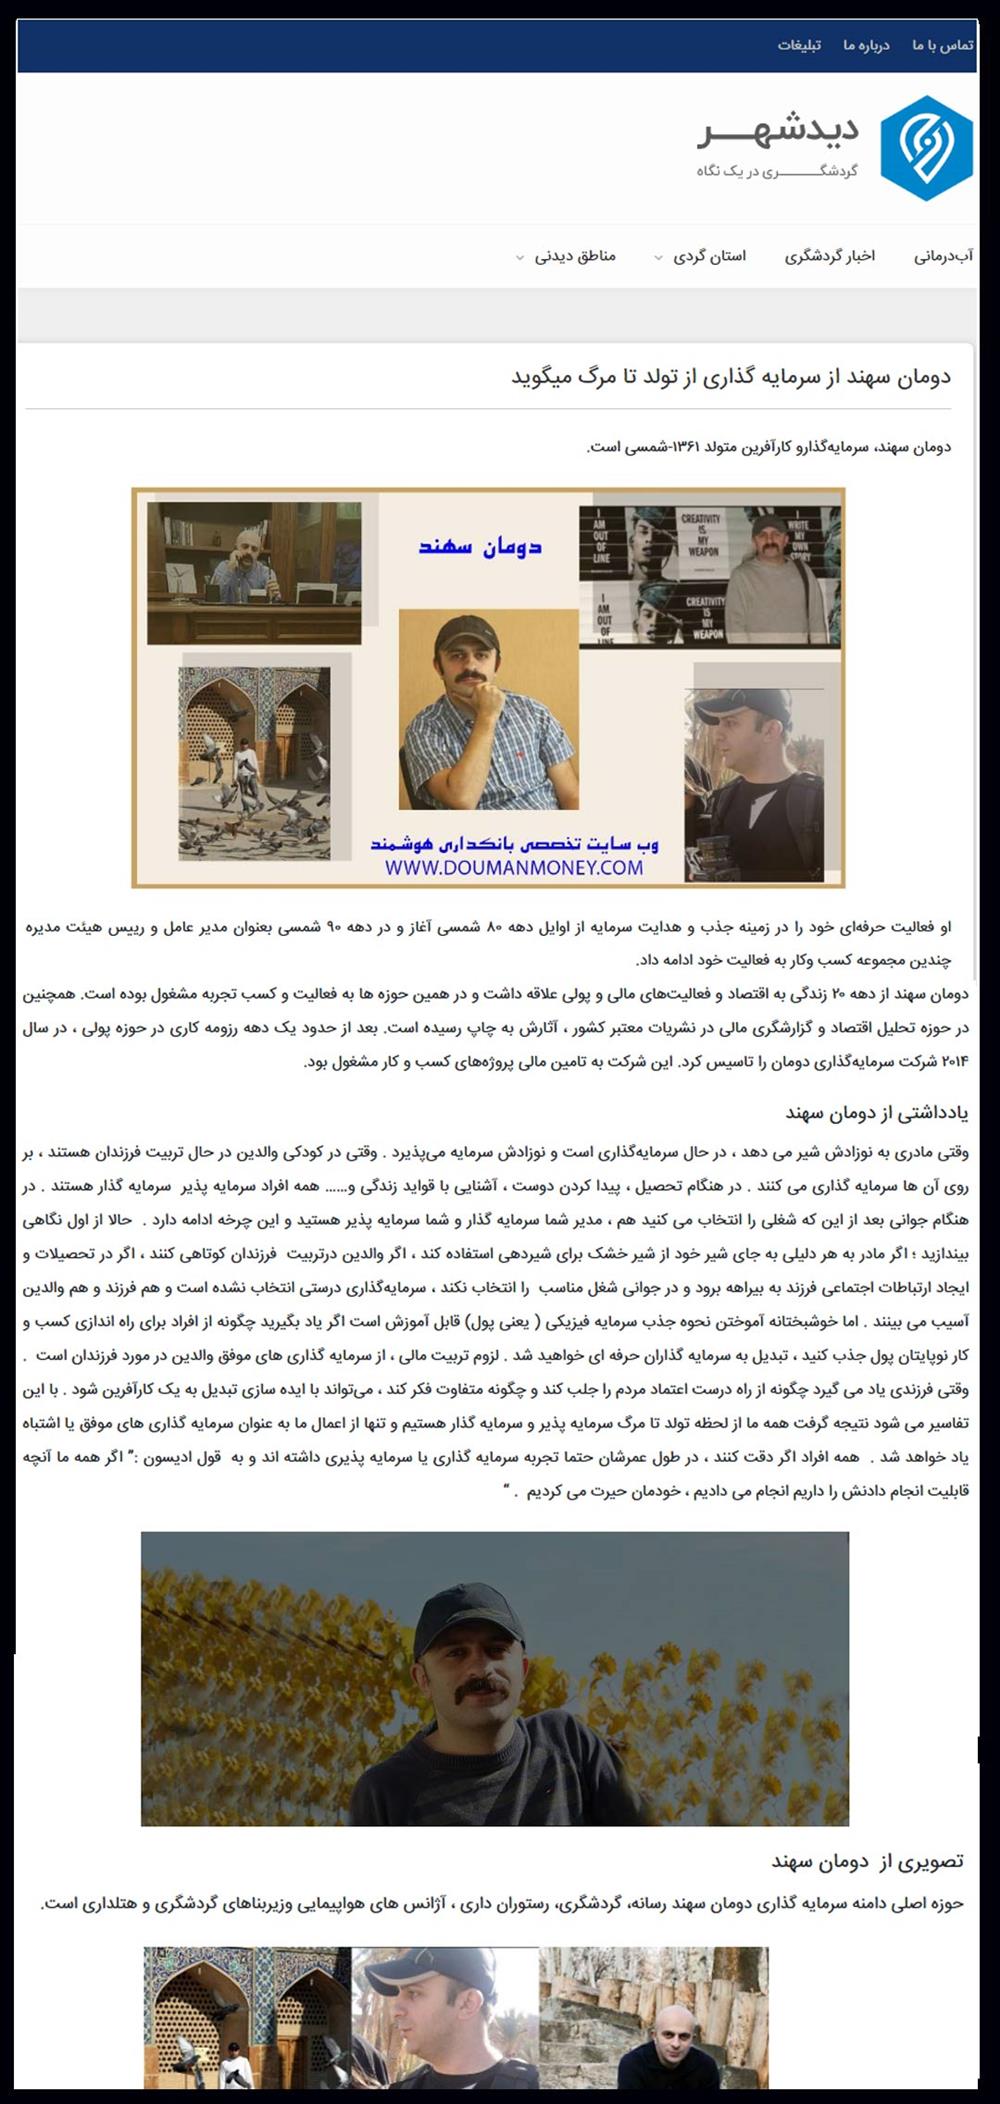 دومان سهند در وب سایت گردشگری دیدشهر